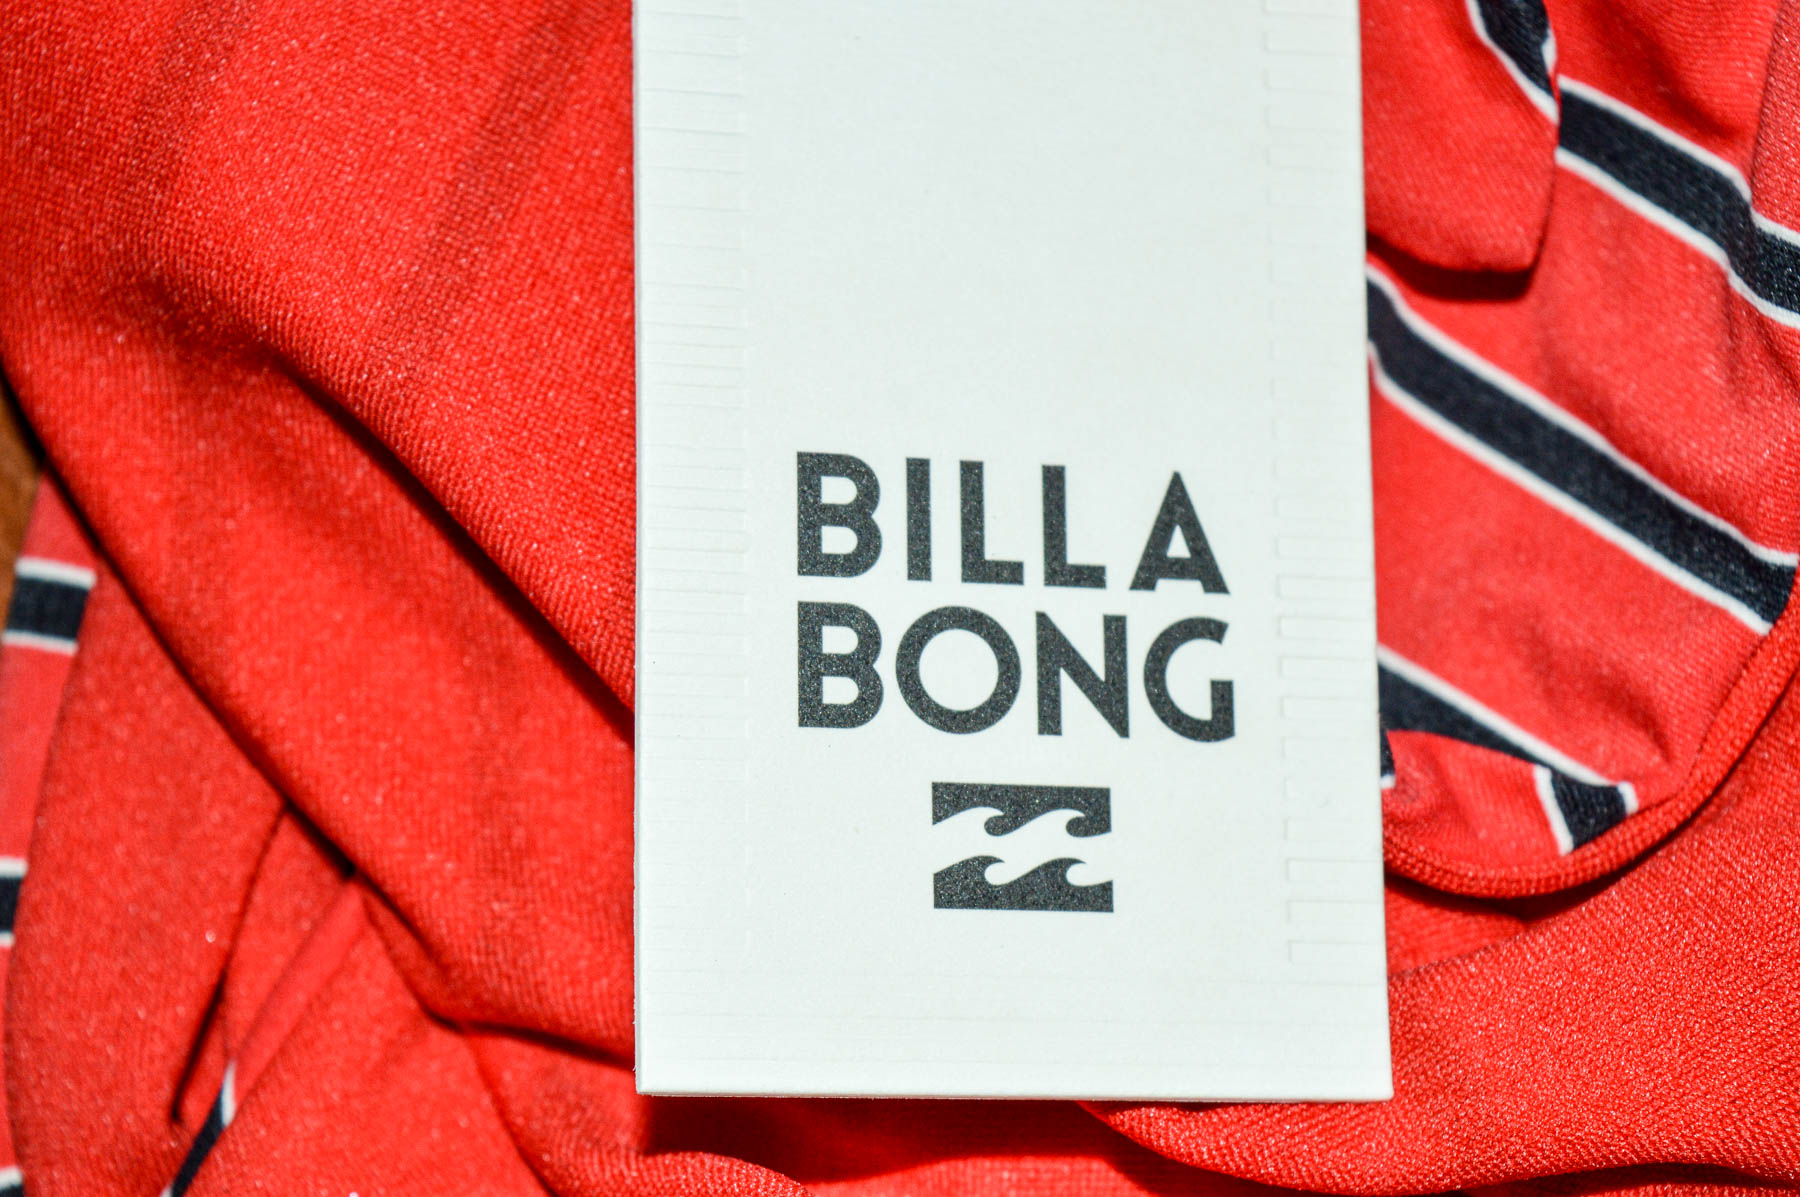 Chiloți de plaj pentru femei - BILLA BONG - 2